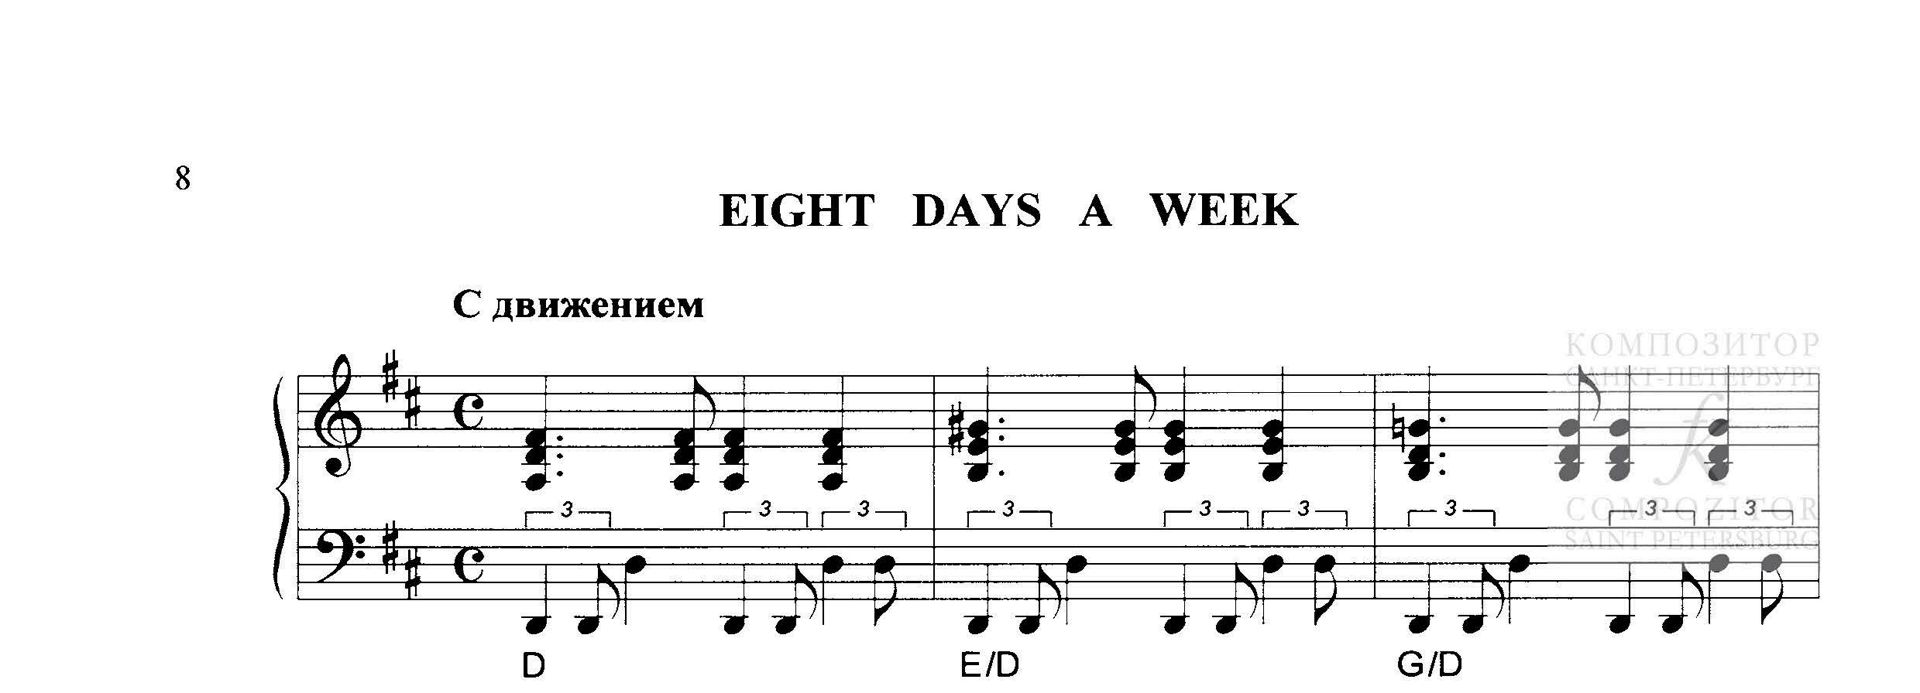 The Beatles. Eight Days a Week. Песня Битлз в легком переложении для фортепиано (гитары)